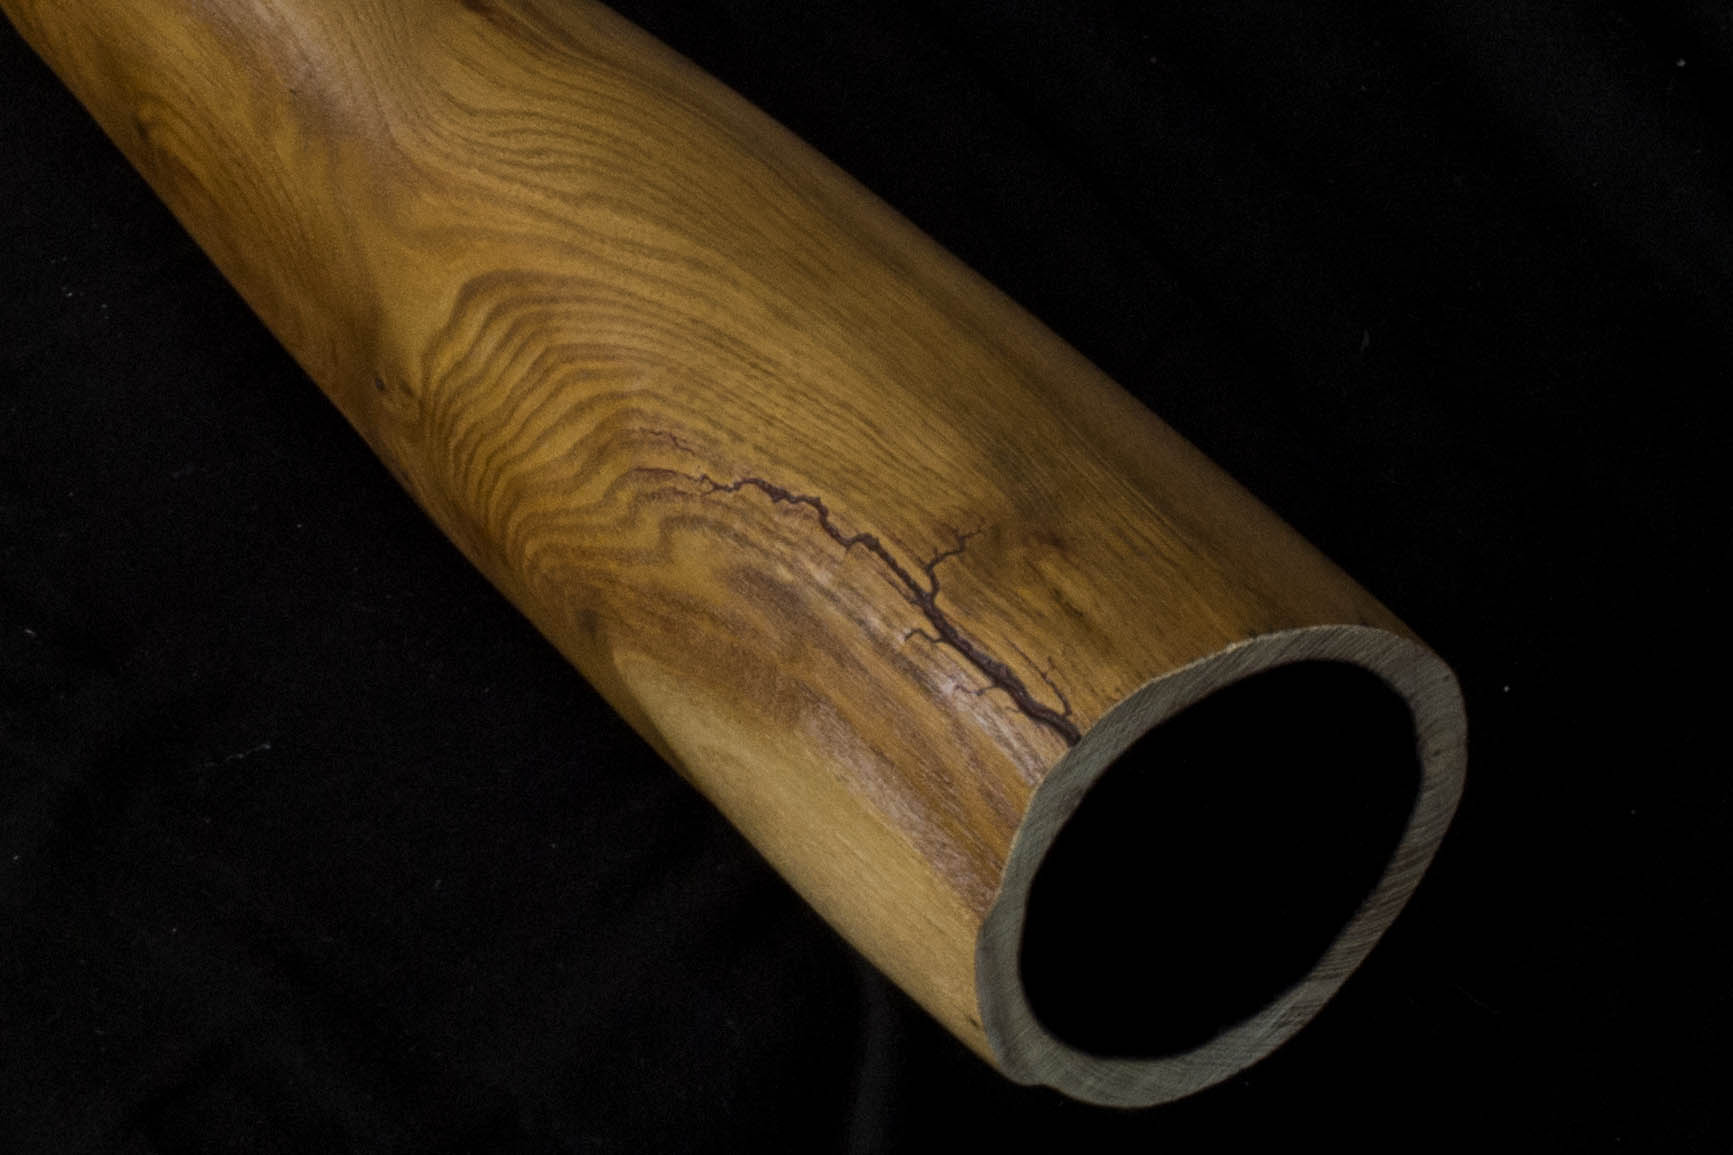 akátová didgeridoo